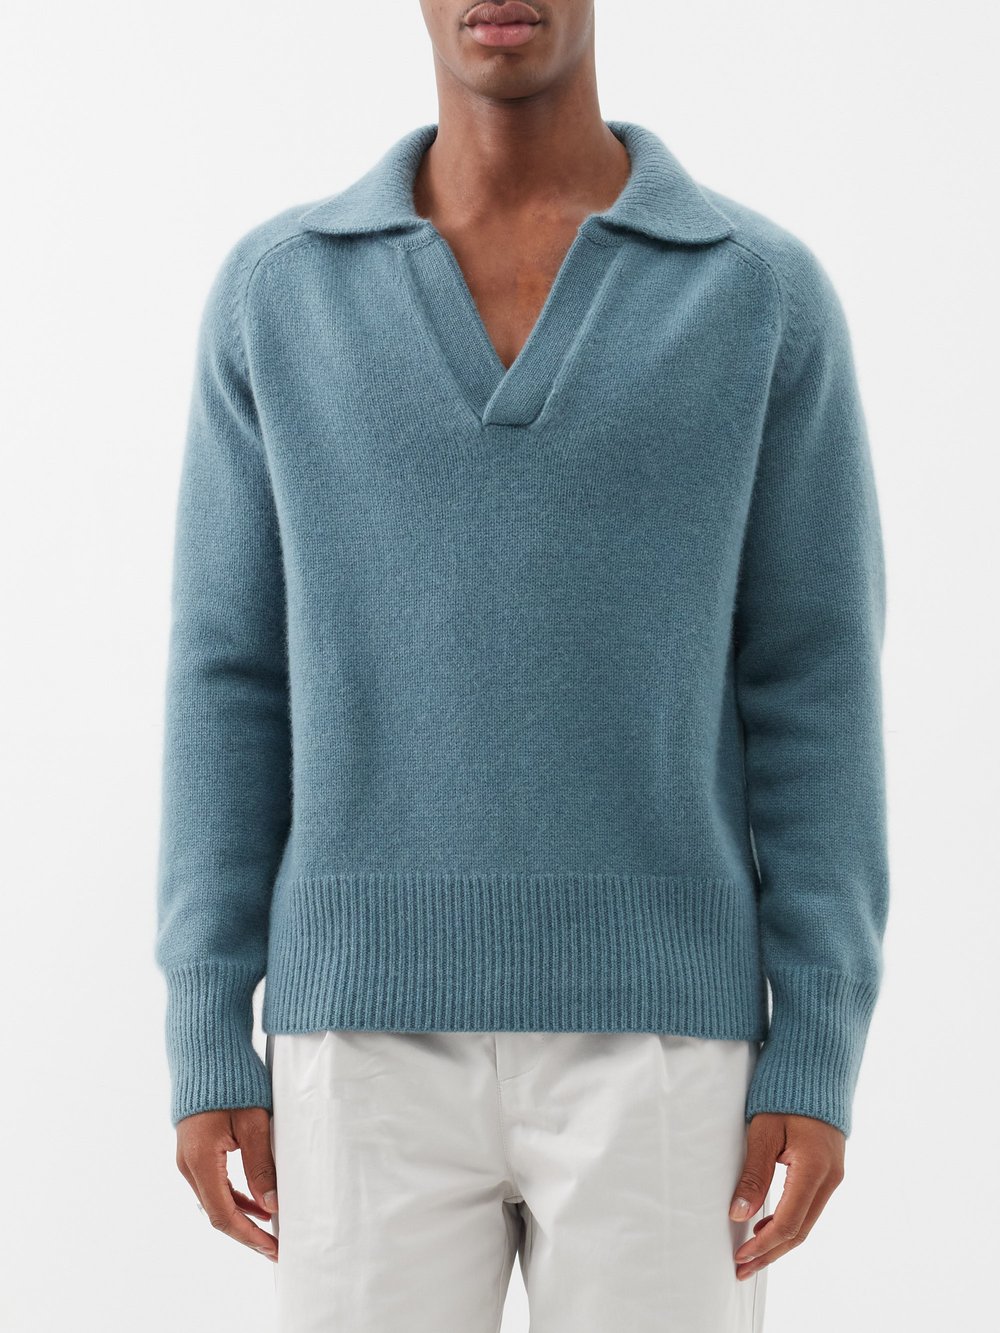 Кашемировый свитер-поло с открытым воротником mr clifton gate Arch4, синий